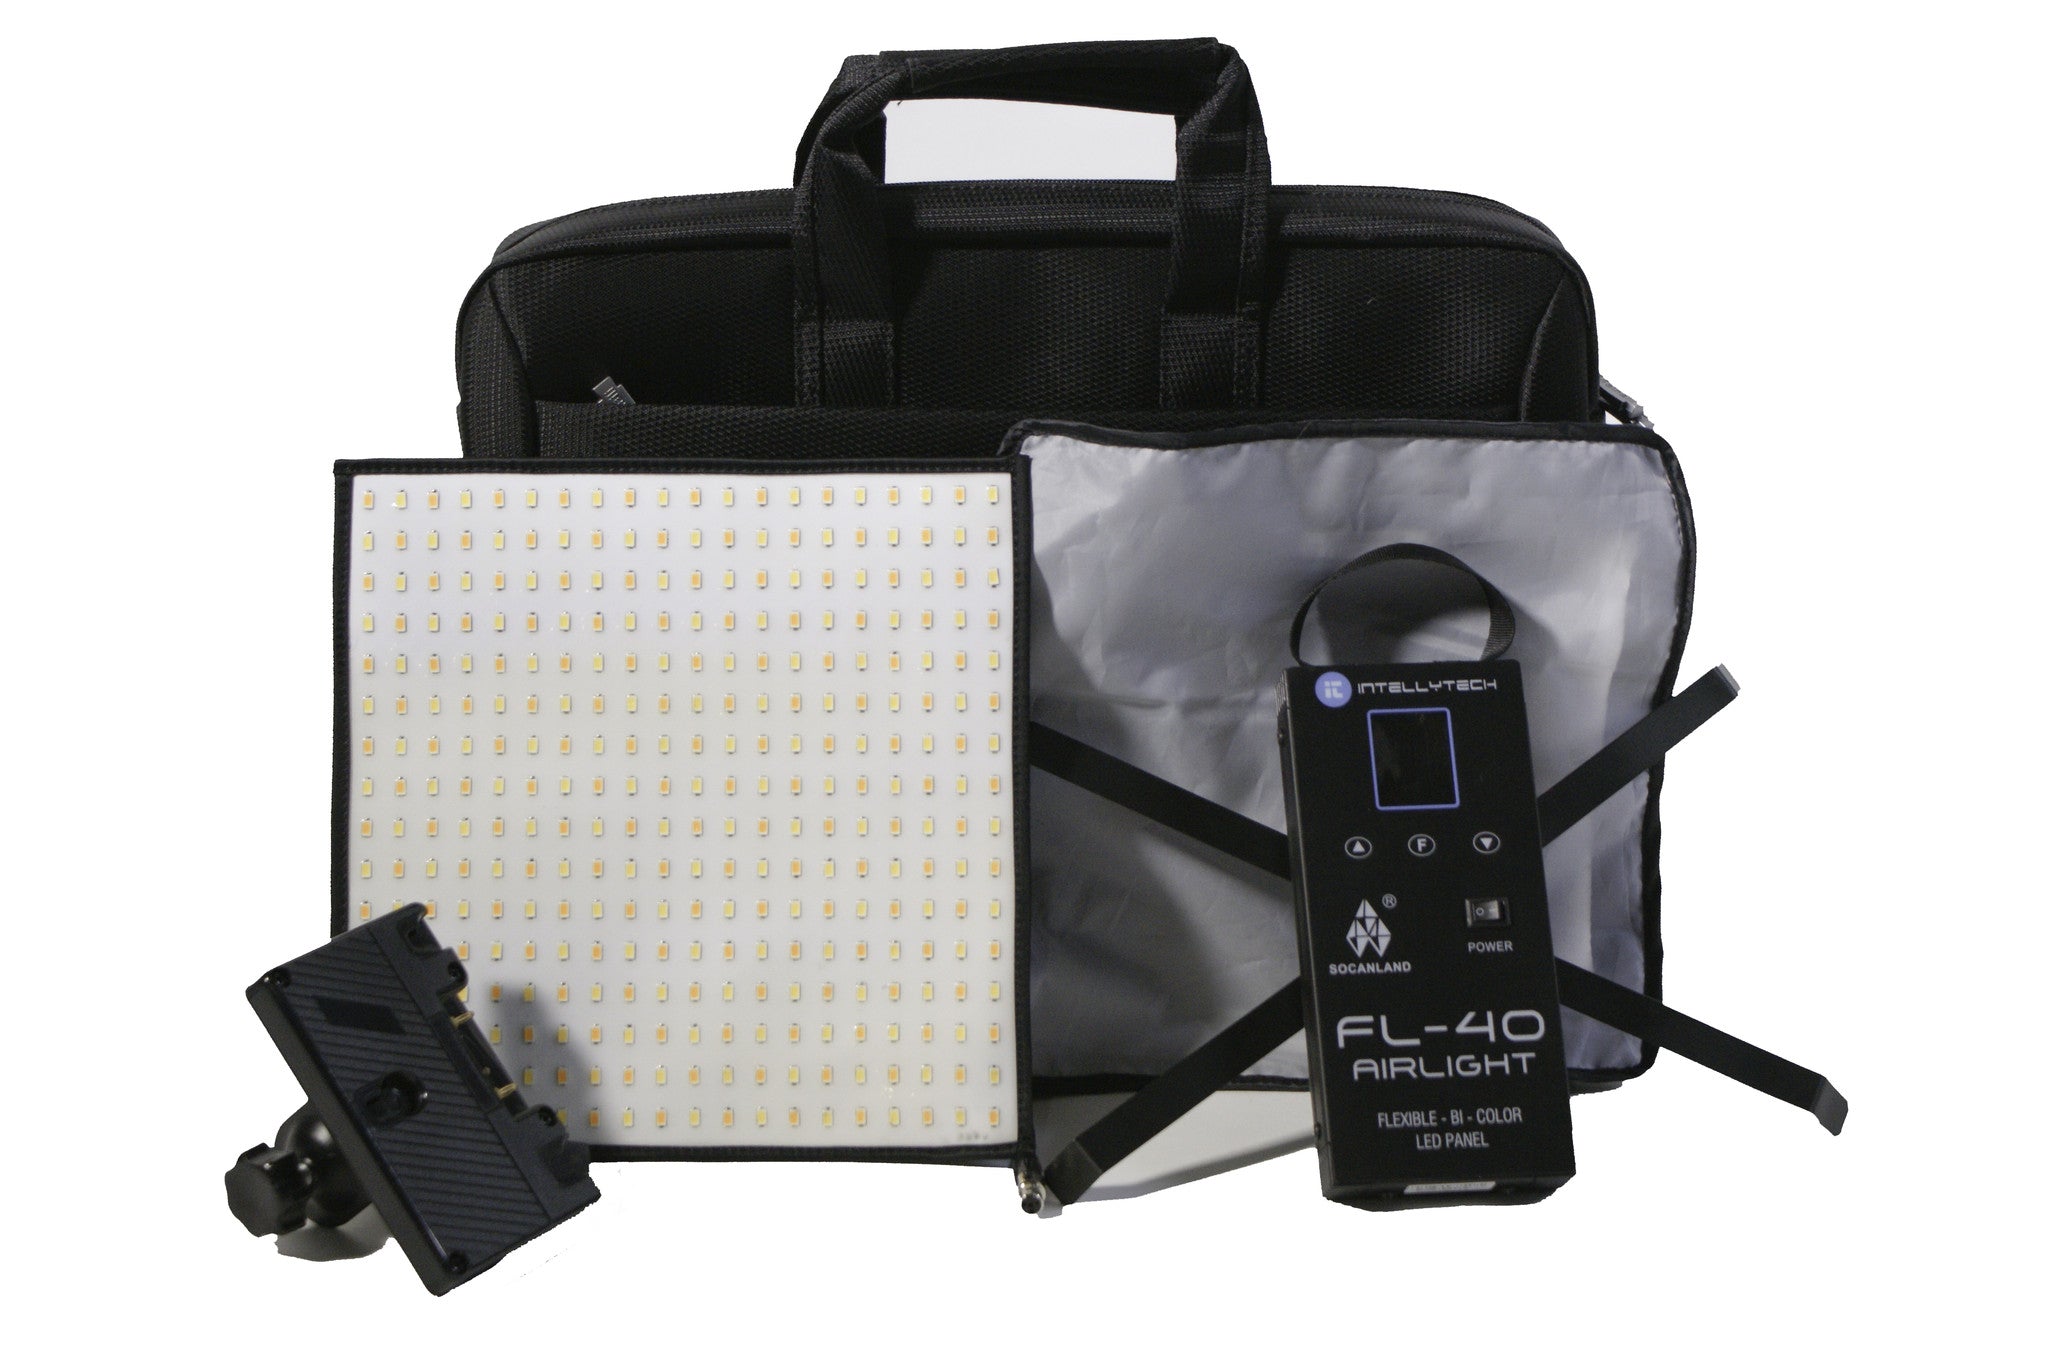 FL-40 Airlight Kit - Flexible 10"x10" LED Bi-Color Light Panel. Flexlite (Intellytech, Socanland) 